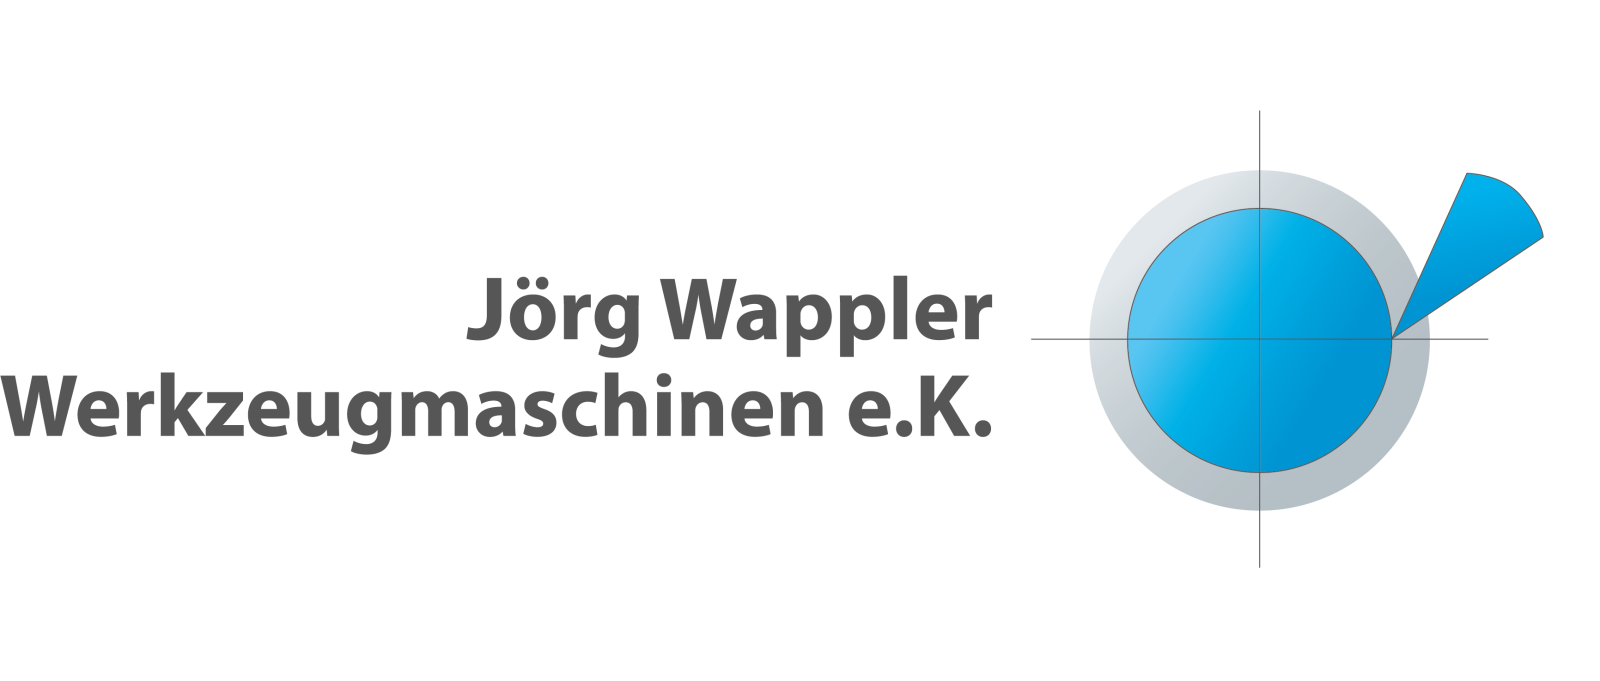 Jörg Wappler Werkzeugmaschinen